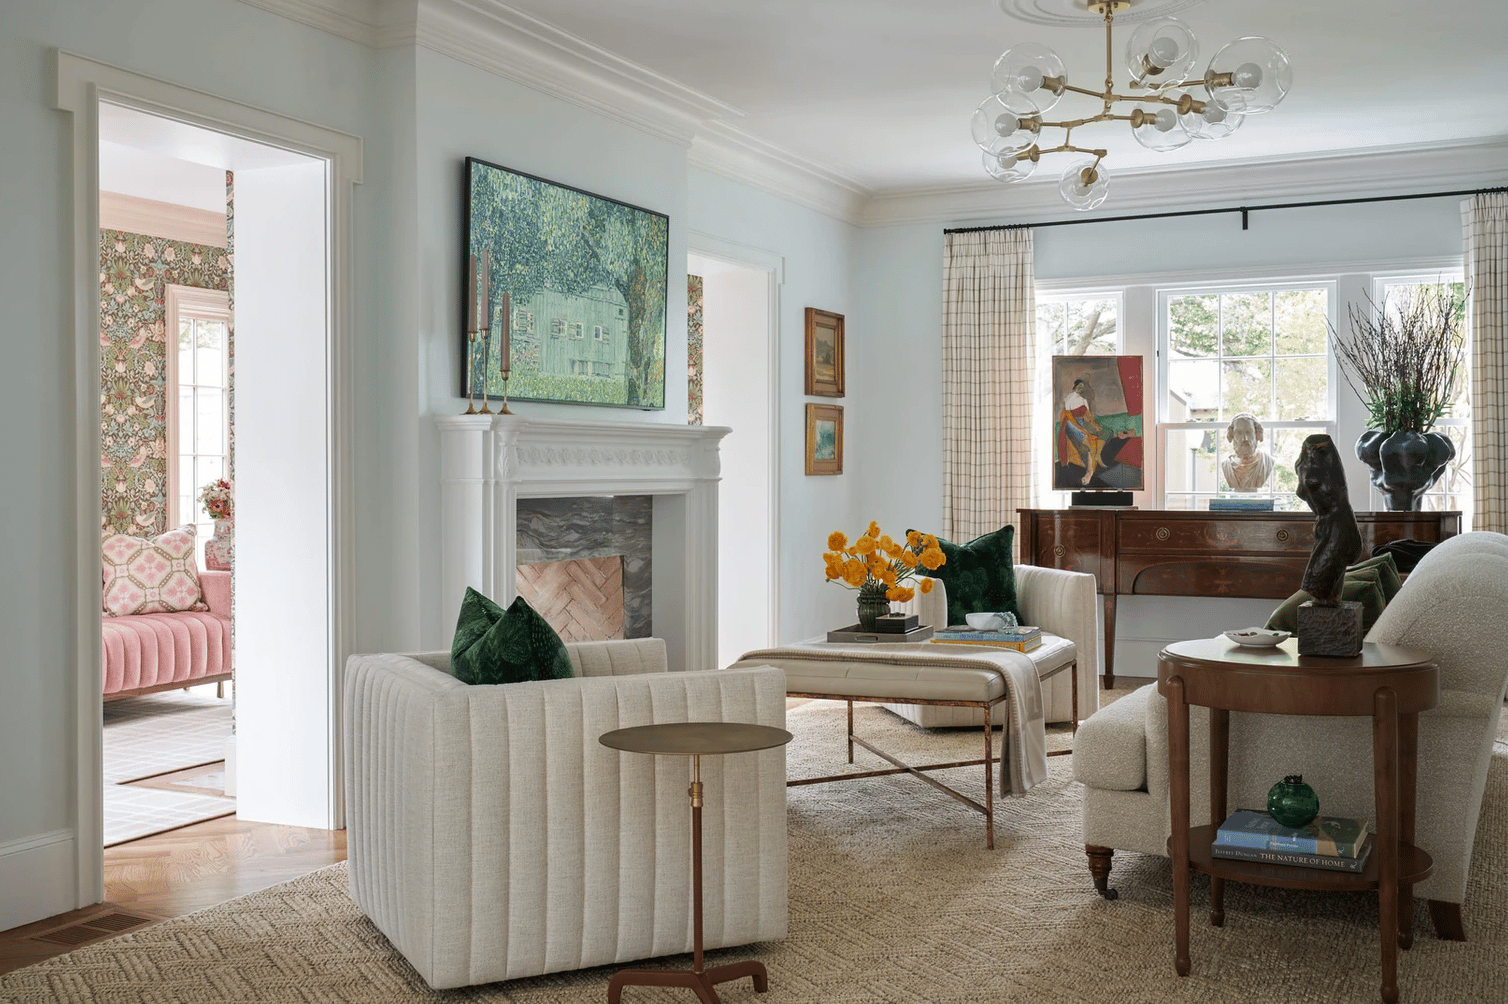 Dunbar Road Design - Nathan Schroder Photography - living room - living room design - living room decor 